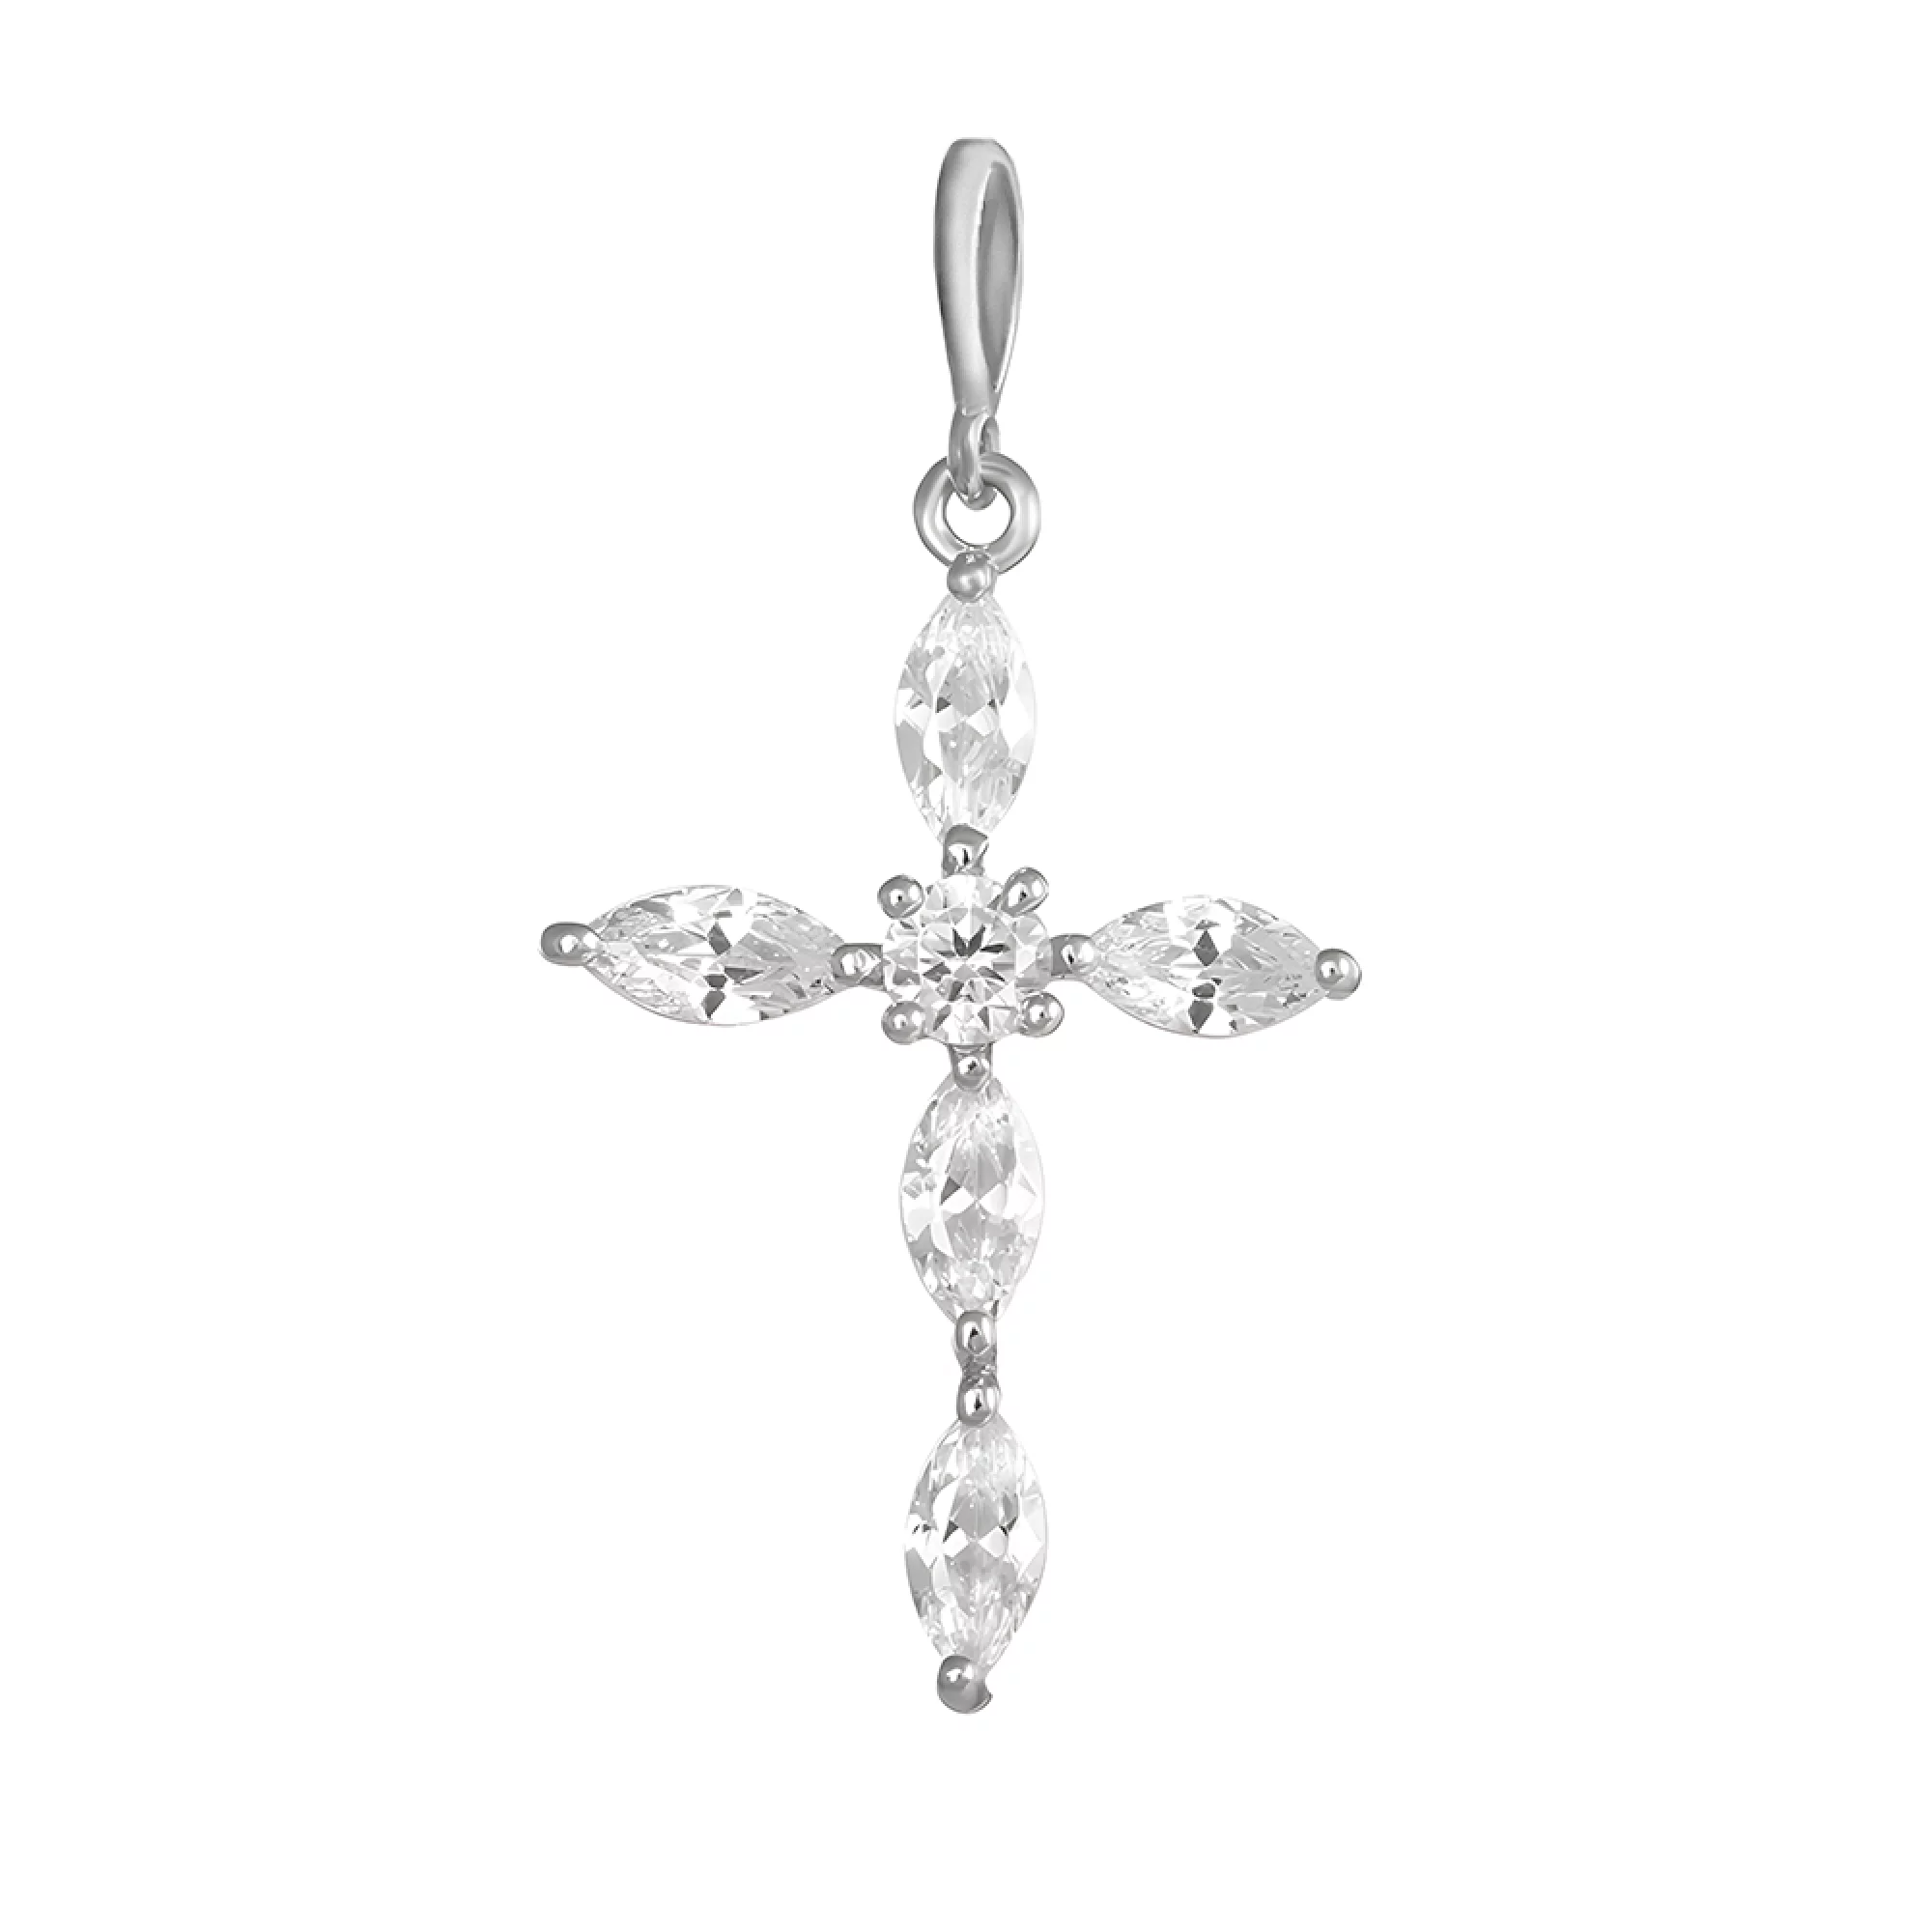 Срібний декоративний хрестик з фіанітами - 1538219 – зображення 1